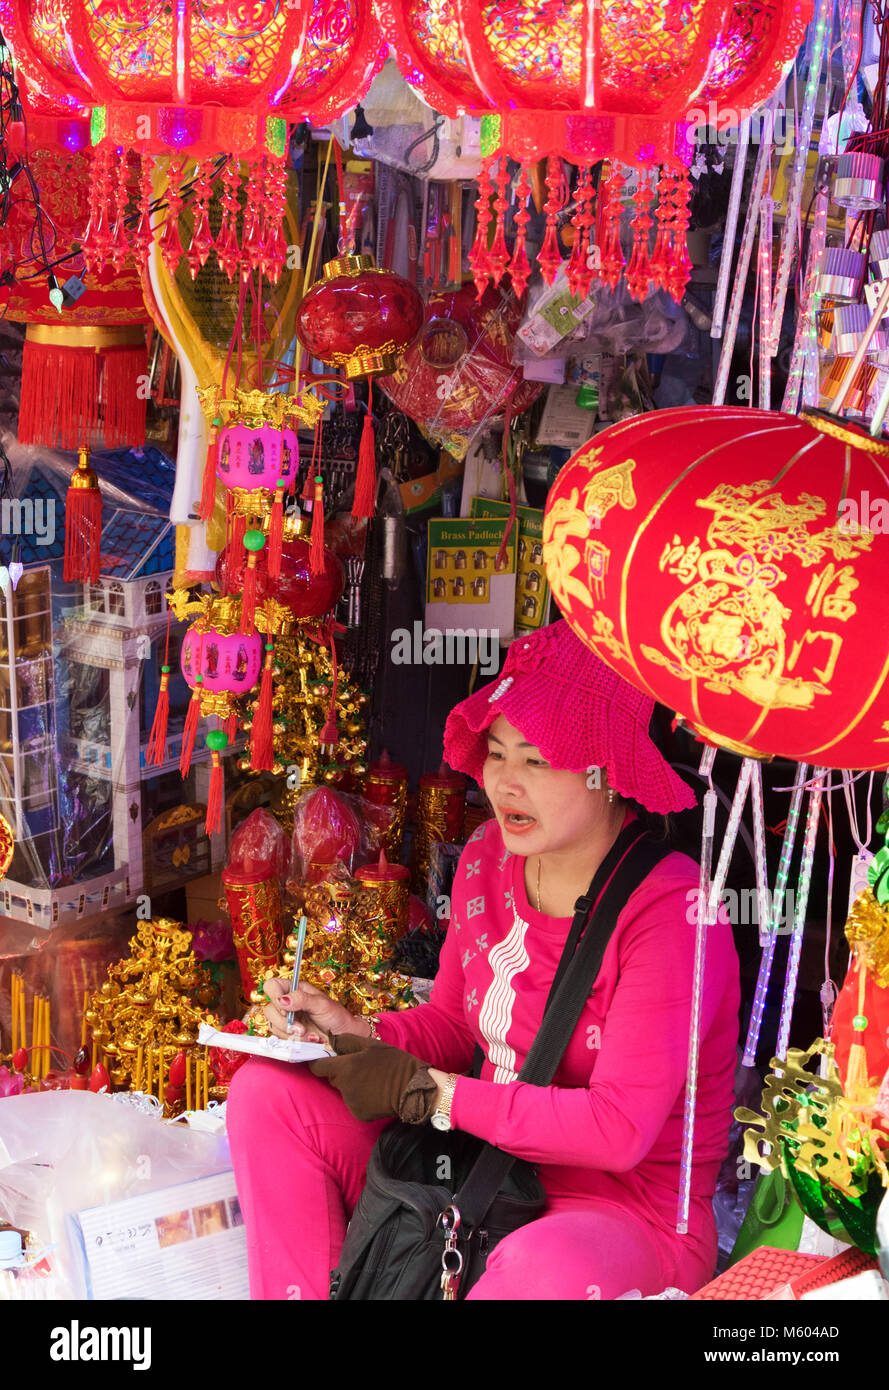 Chinesische Laterne stall und Verkäufer, Verkauf von bunten Lampions, Phnom Penh, Kambodscha, Asien Stockfoto